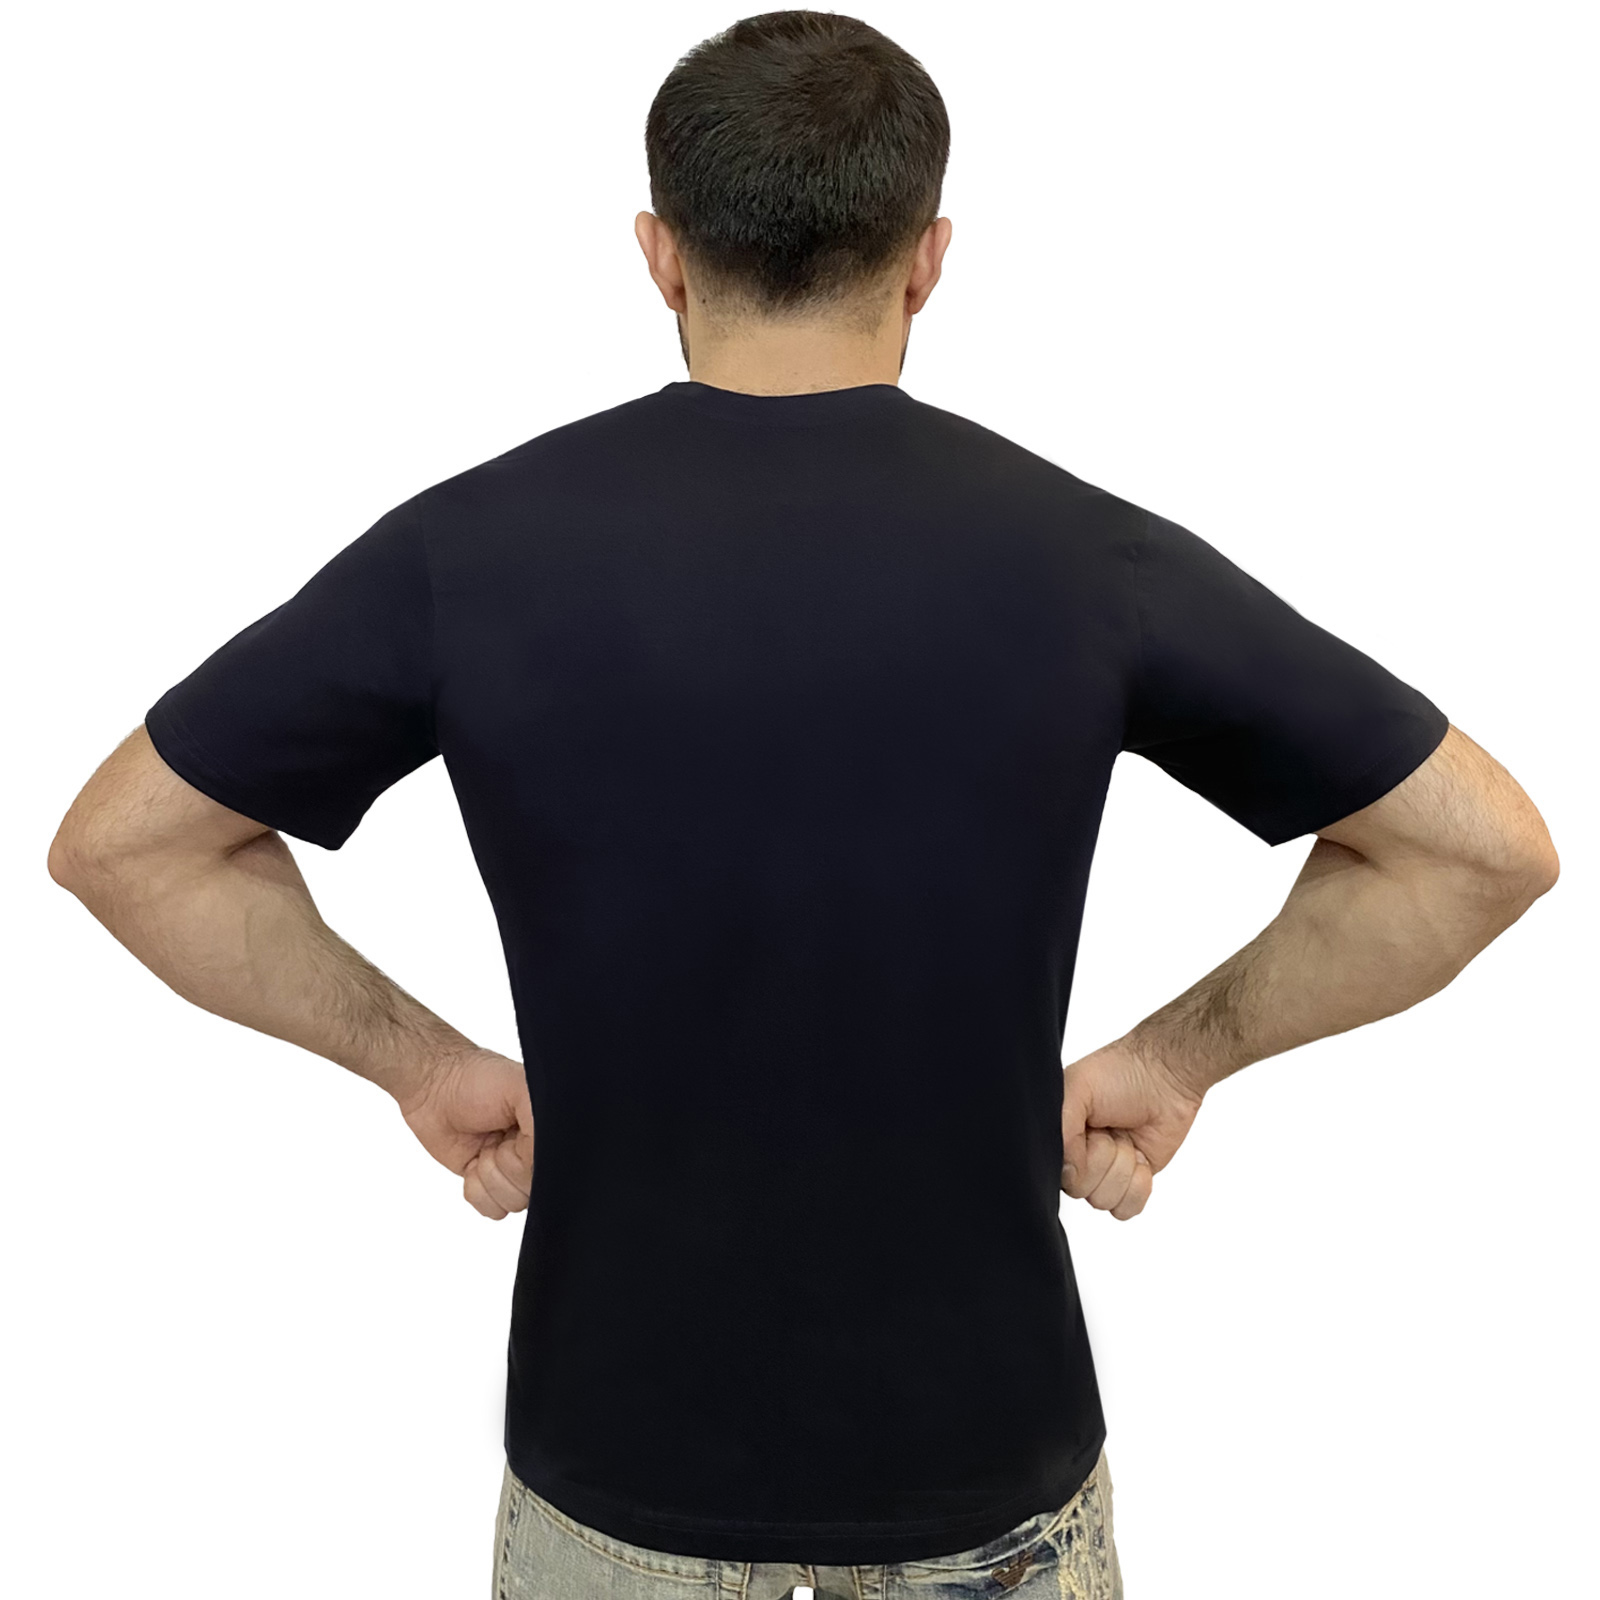 Заказать недорого в интернет магазине однотонную мужскую футболку